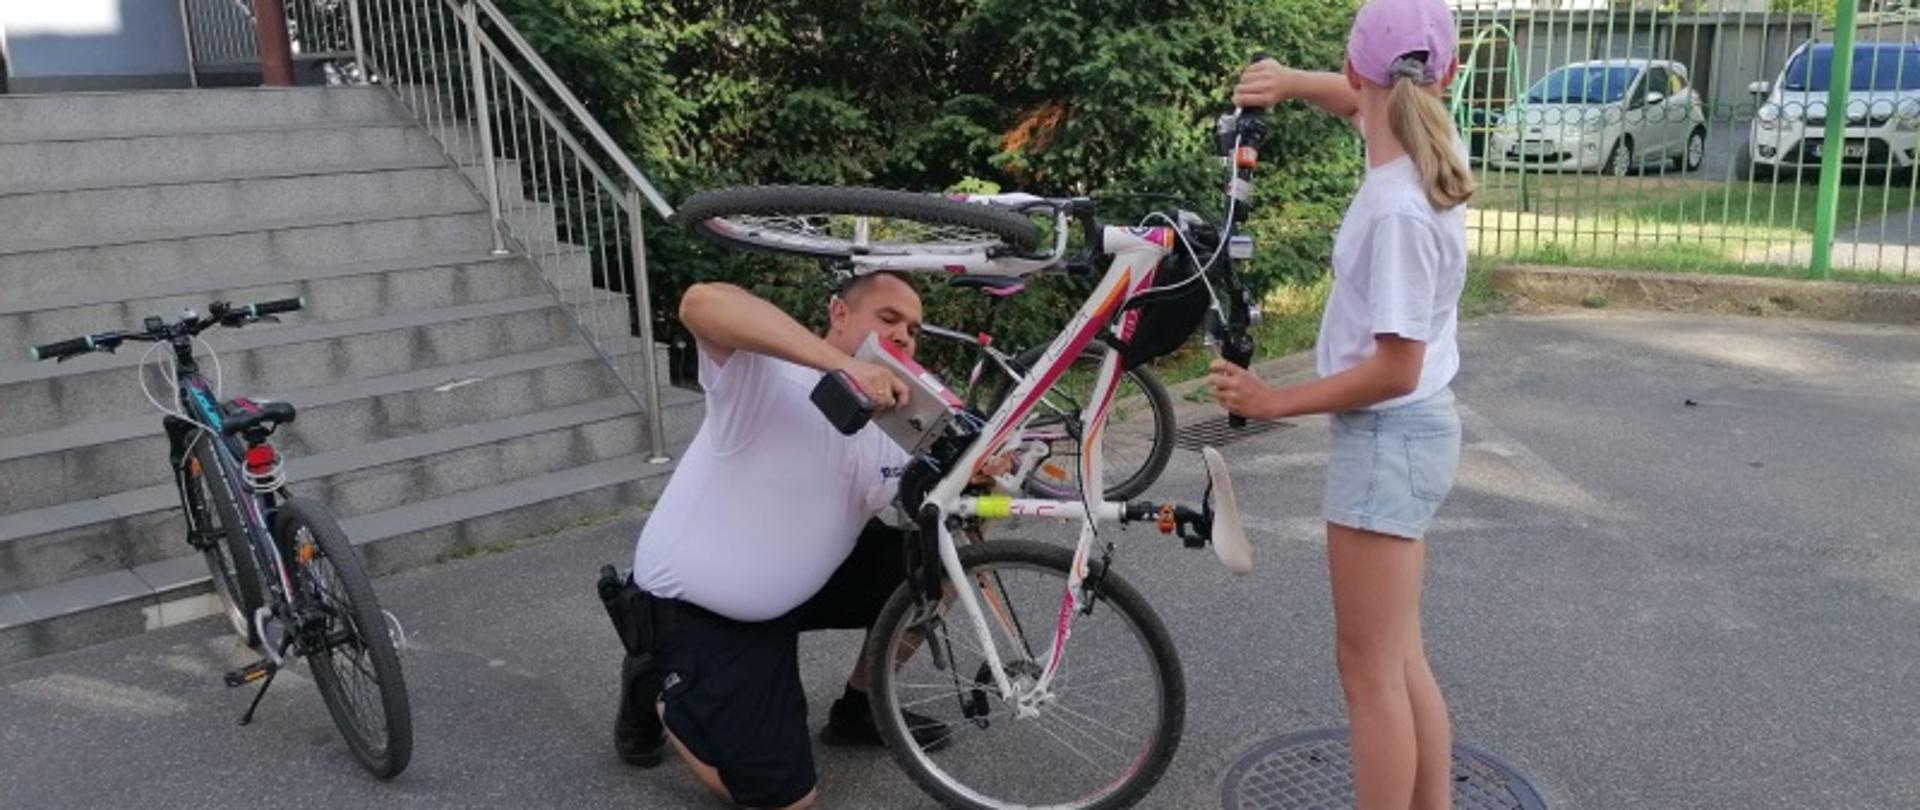 Mężczyzna klęczący przed rowerem, nanoszący specjalnym urządzeniem identyfikator na rower. Rower w pozycji z uniesionym przednim kołem, trzymany przez dziewczynkę